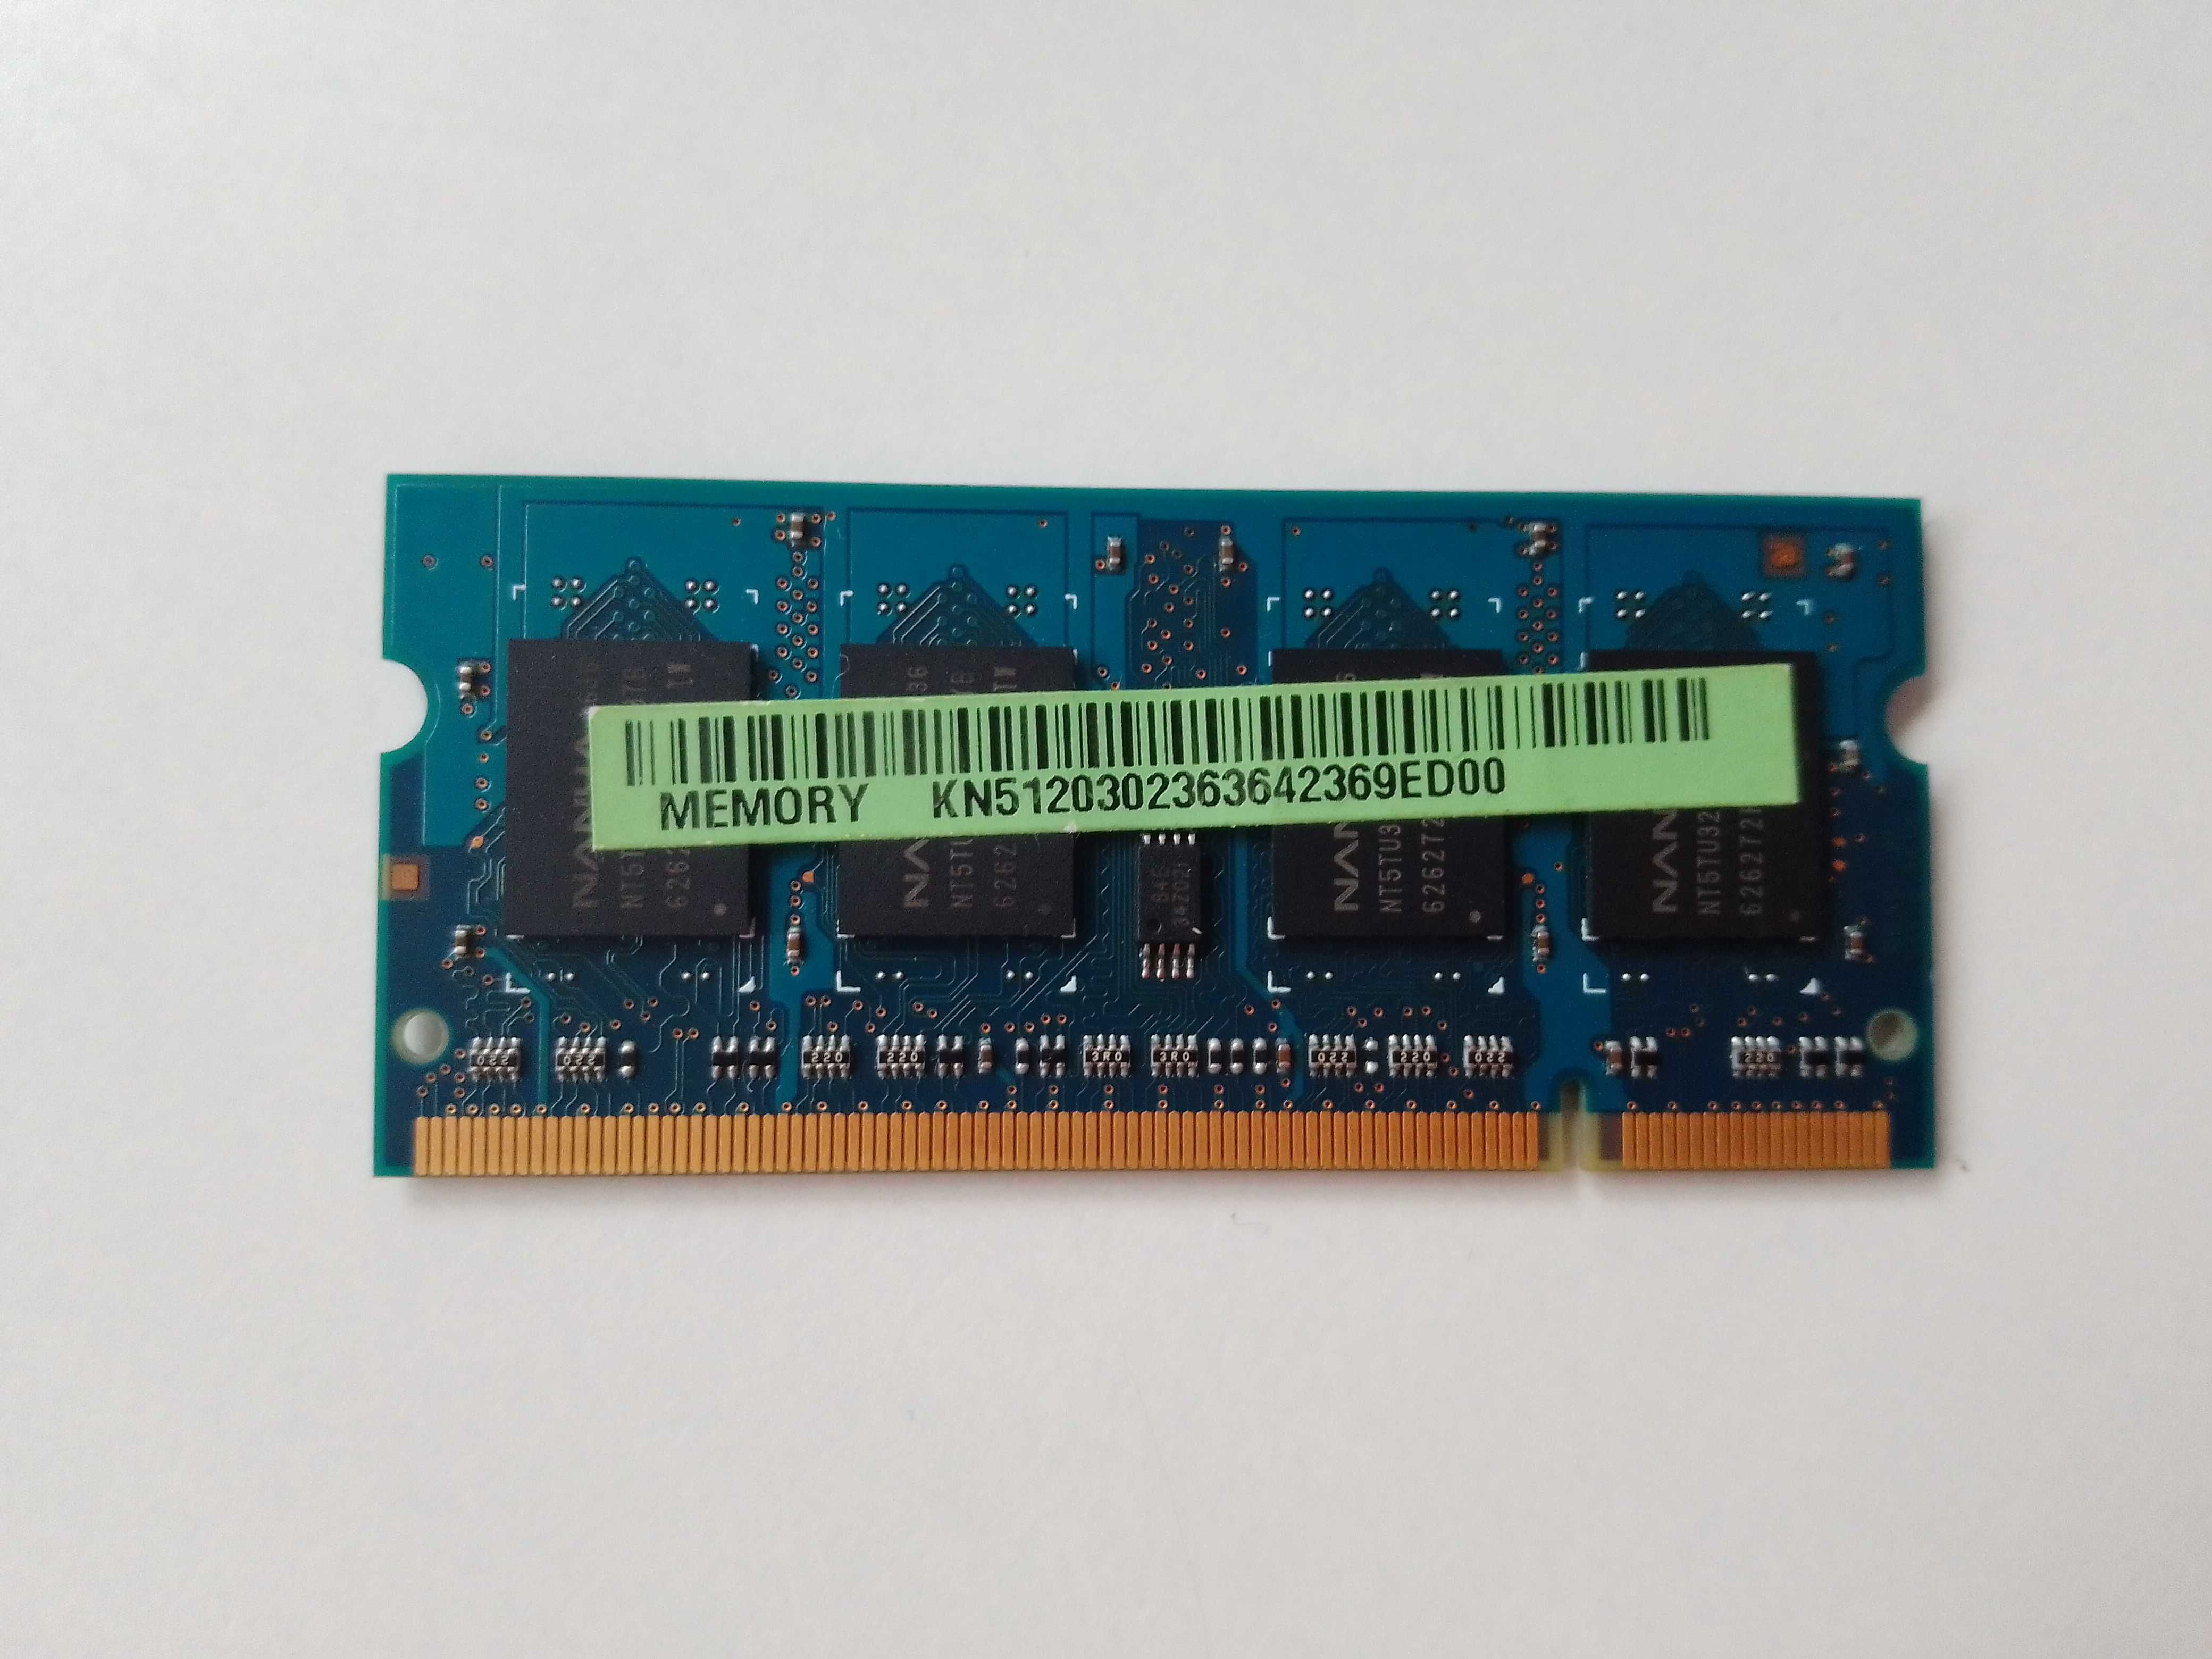 Pamięć RAM do laptopa DDR2 NANYA NT512T64UH8A1FN-37B 512 MB (002423)